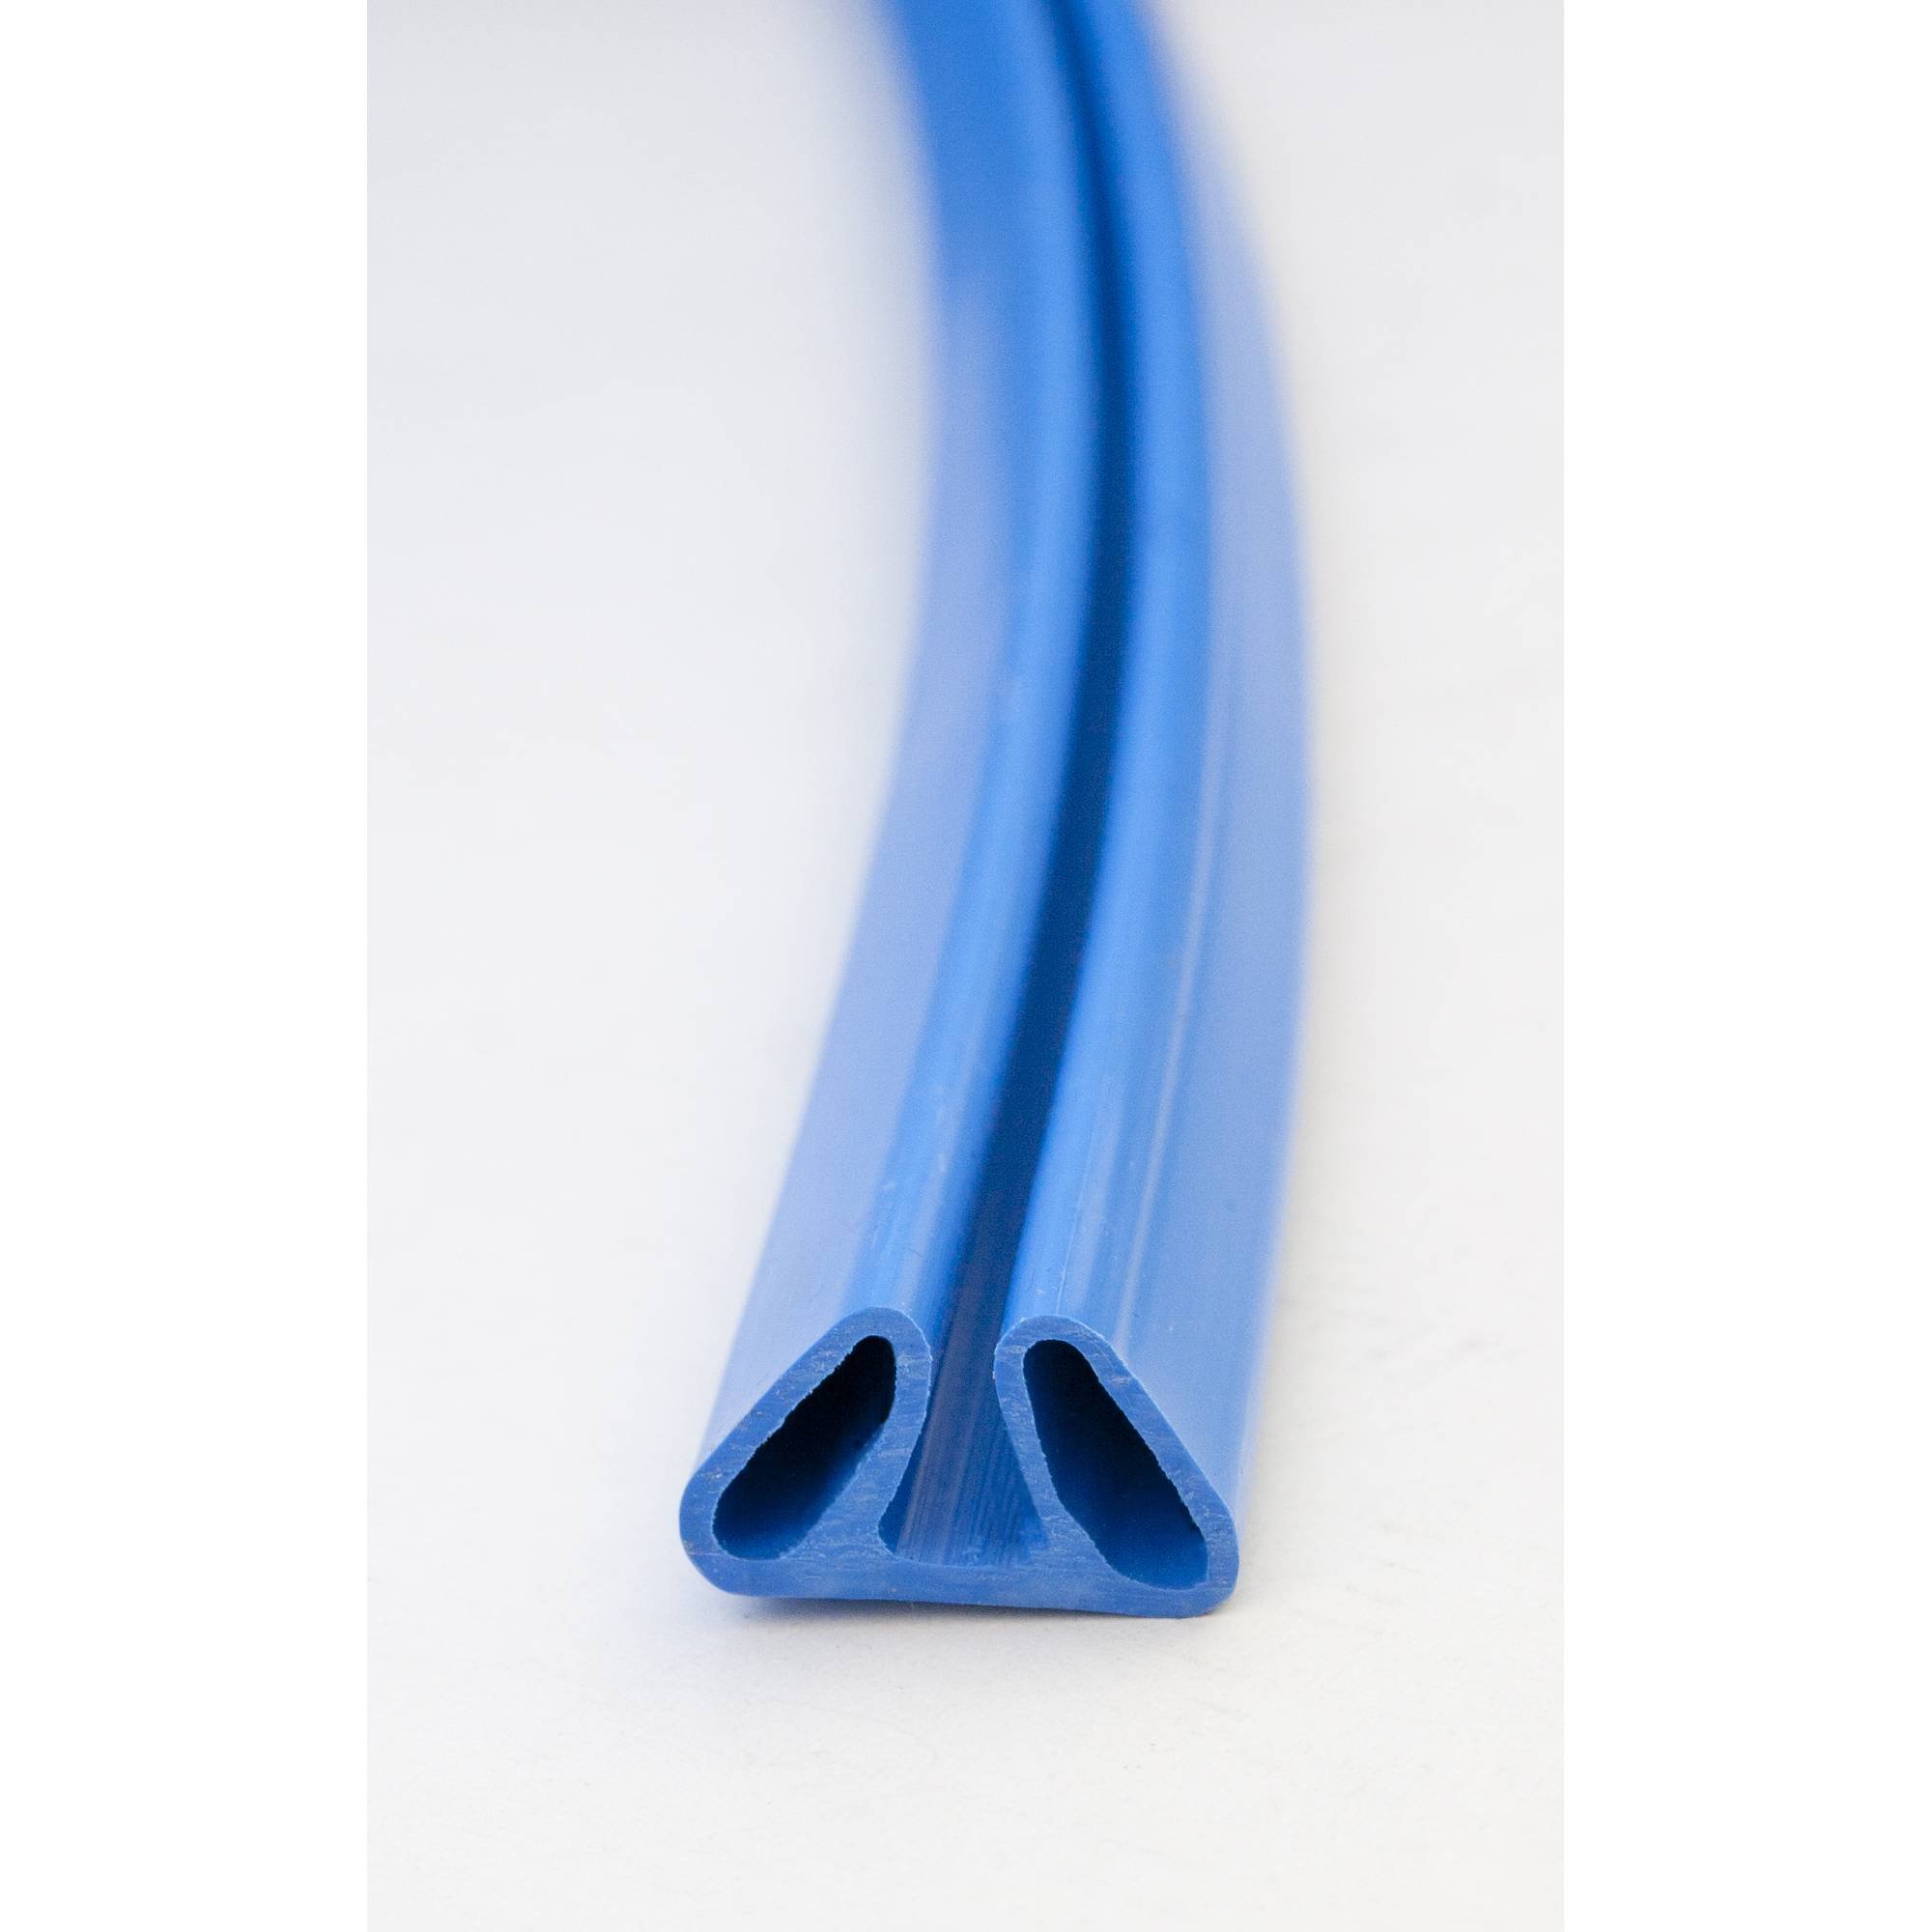 Stahlwandpool rund Exklusiv 500x150 cm, Stahl 0,8 mm weiß, Folie 0,6 mm blau, Einhängebiese